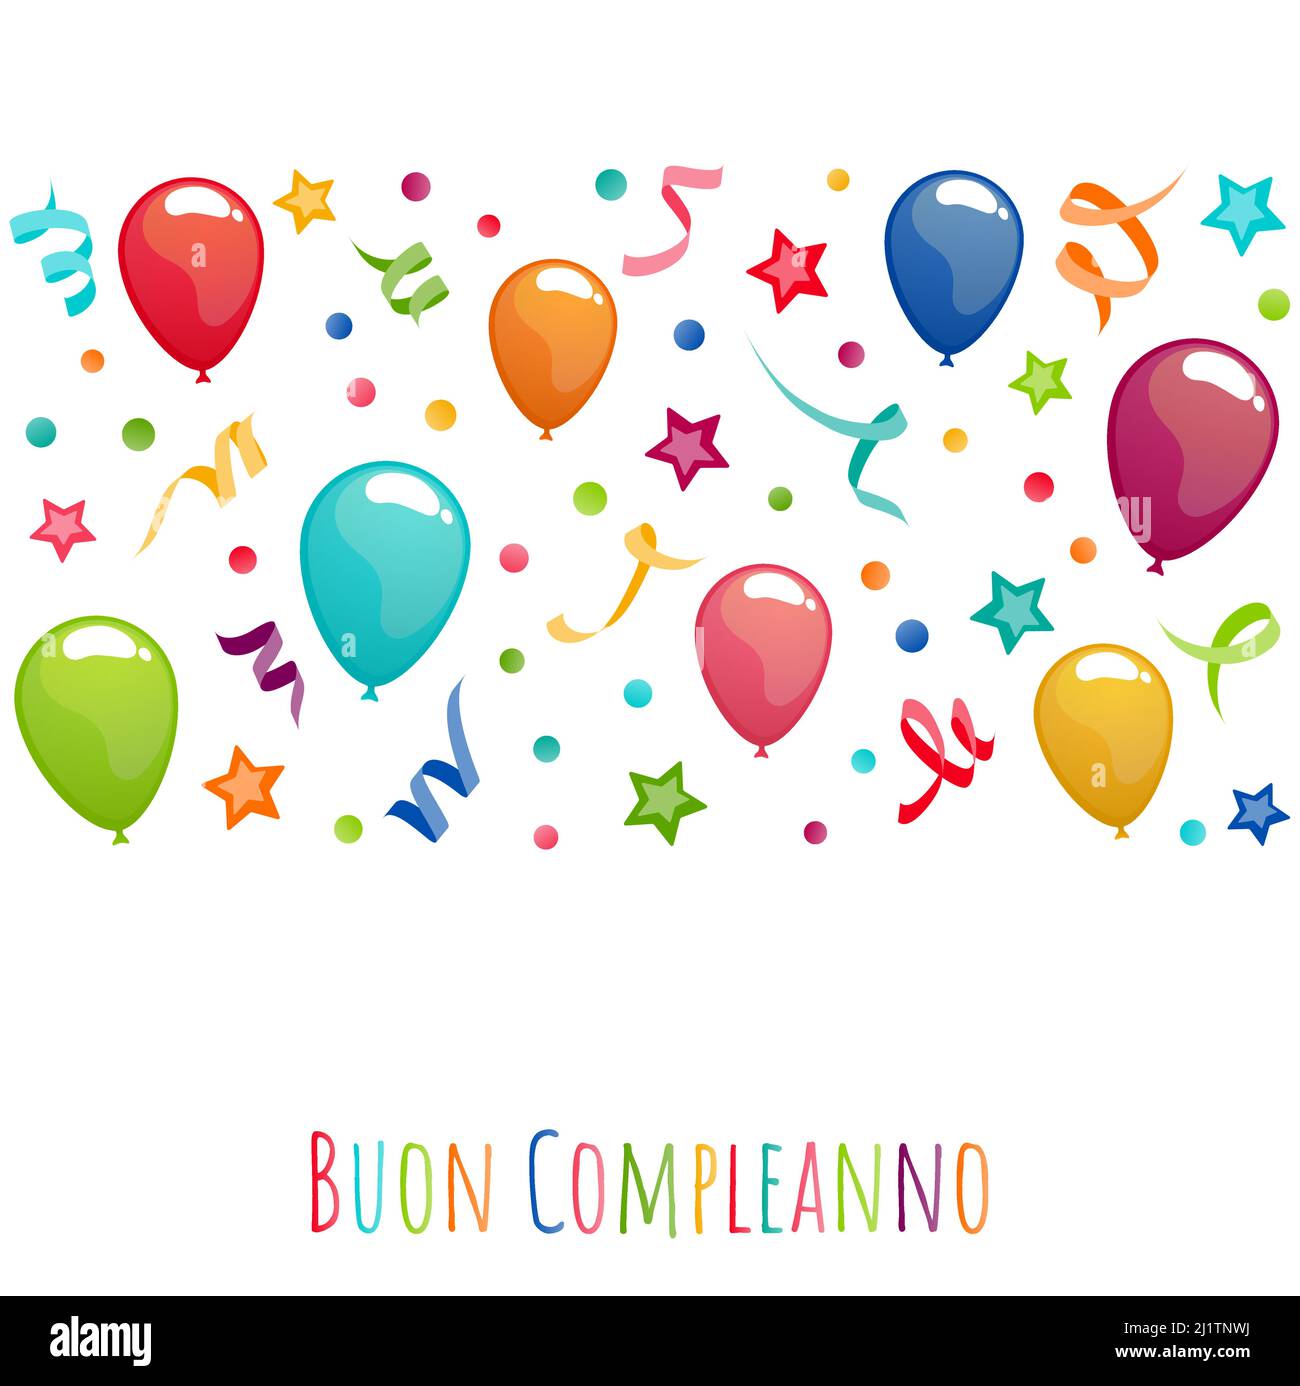 bannière de fichier d'illustration vectoriel eps avec messages d'anniversaire (texte italien) avec ballons, banderoles, confetti et étoiles pour l'anniversaire et la fête de co Illustration de Vecteur